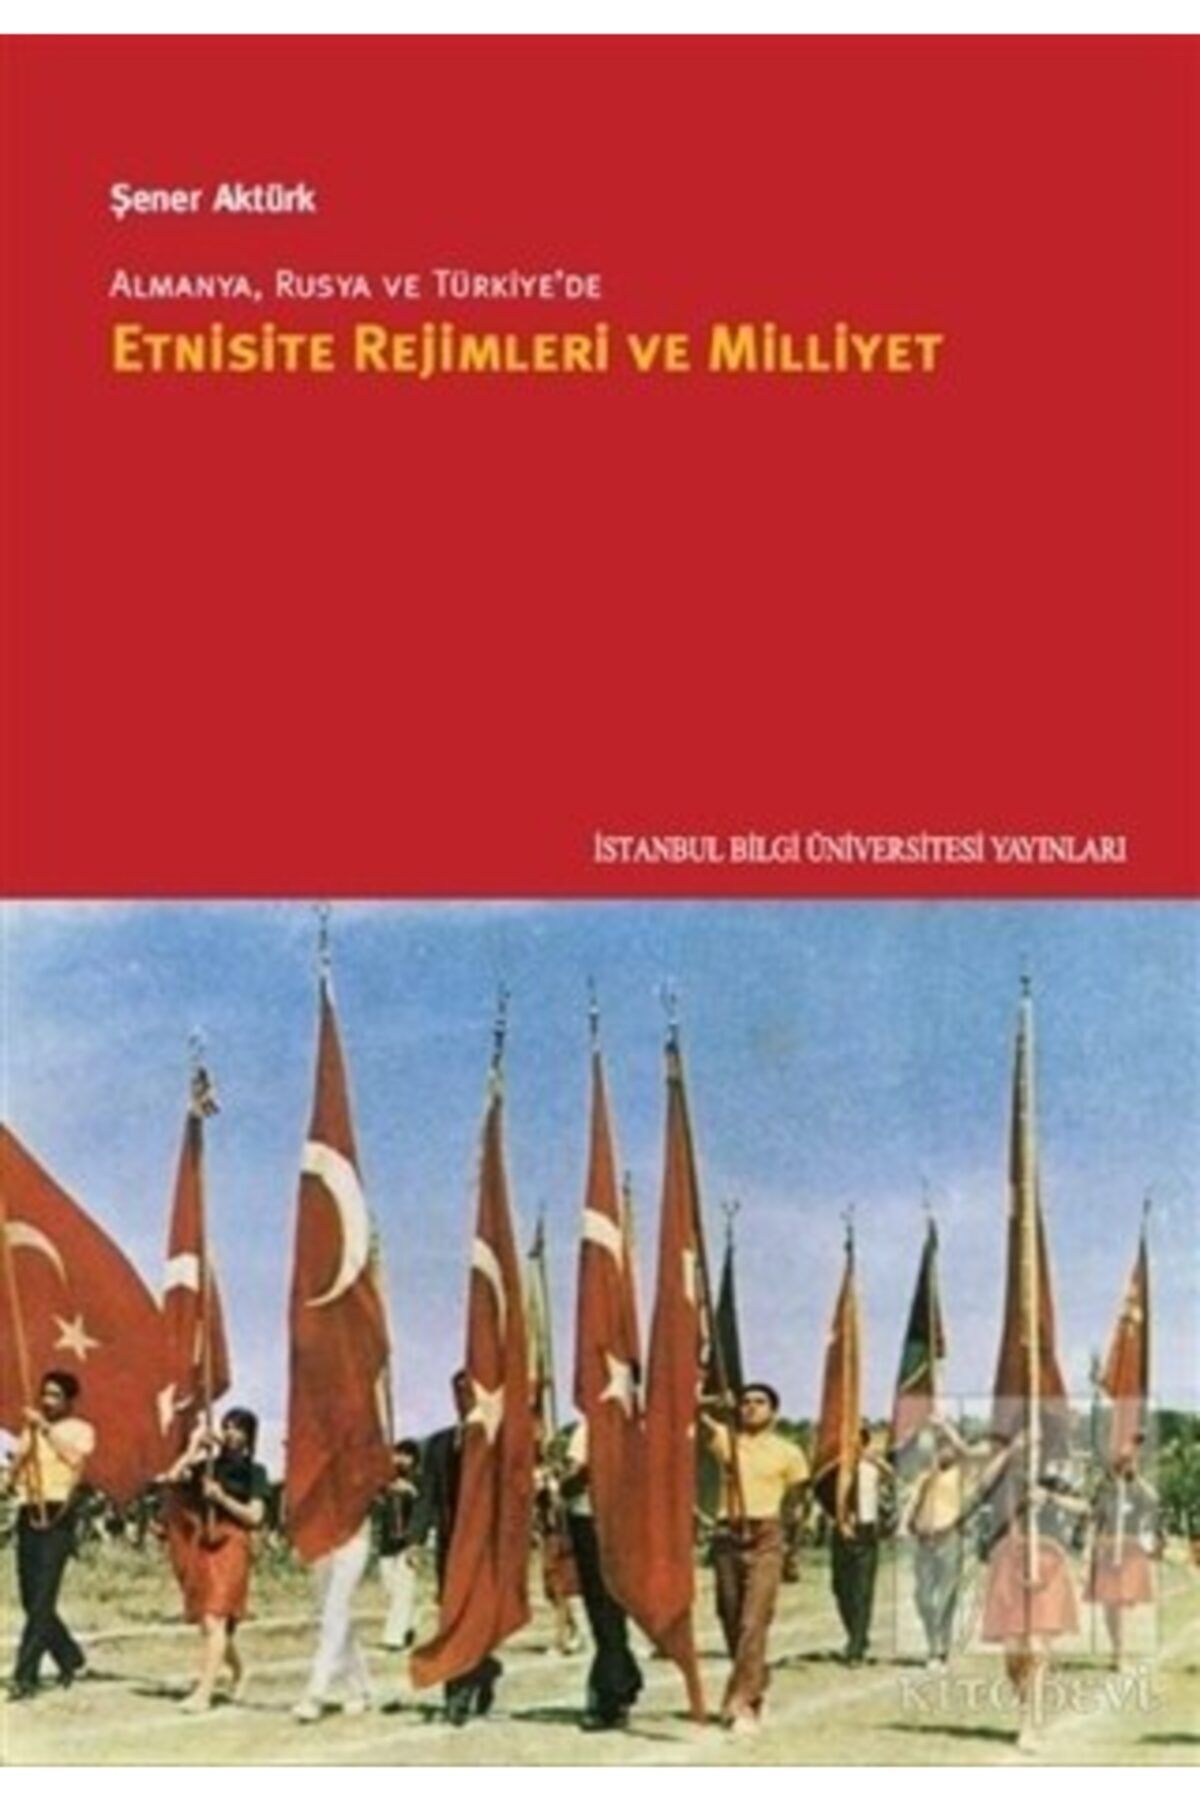 İstanbul Bilgi Üniversitesi Yayınları Almanya, Rusya Ve Türkiye’de Etnisite Rejimleri Ve